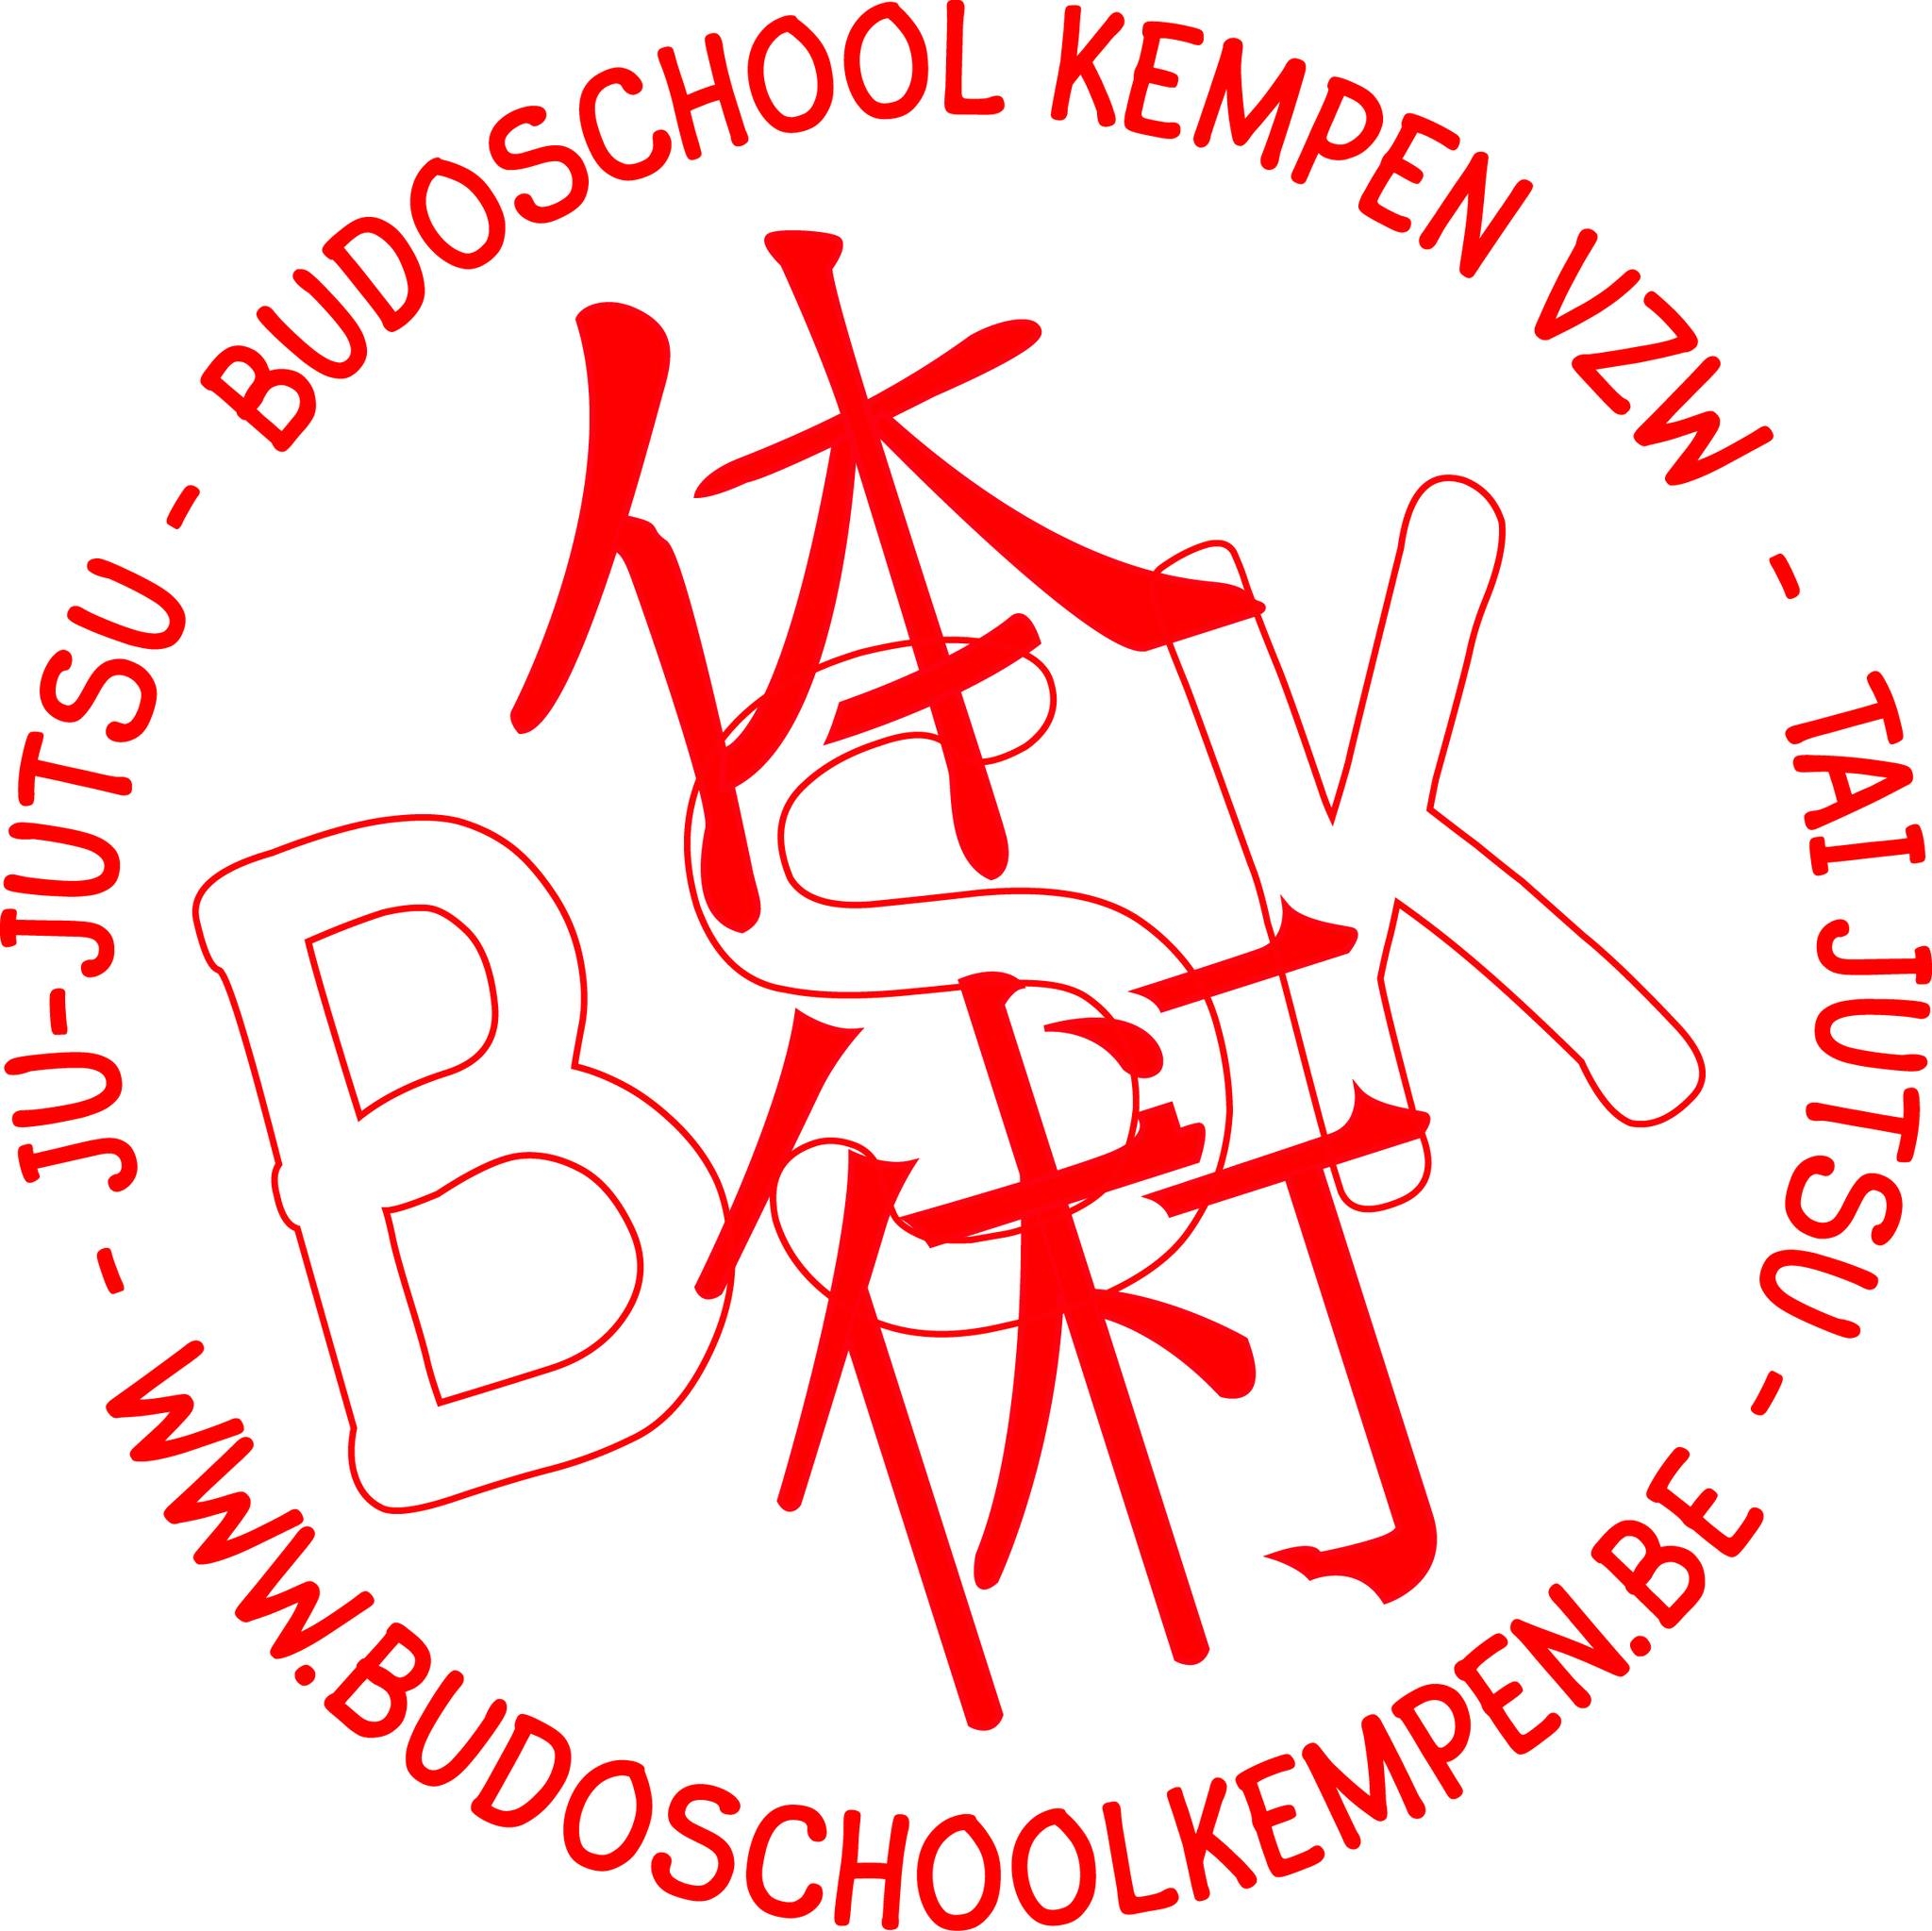 Budschool Kempen Logo